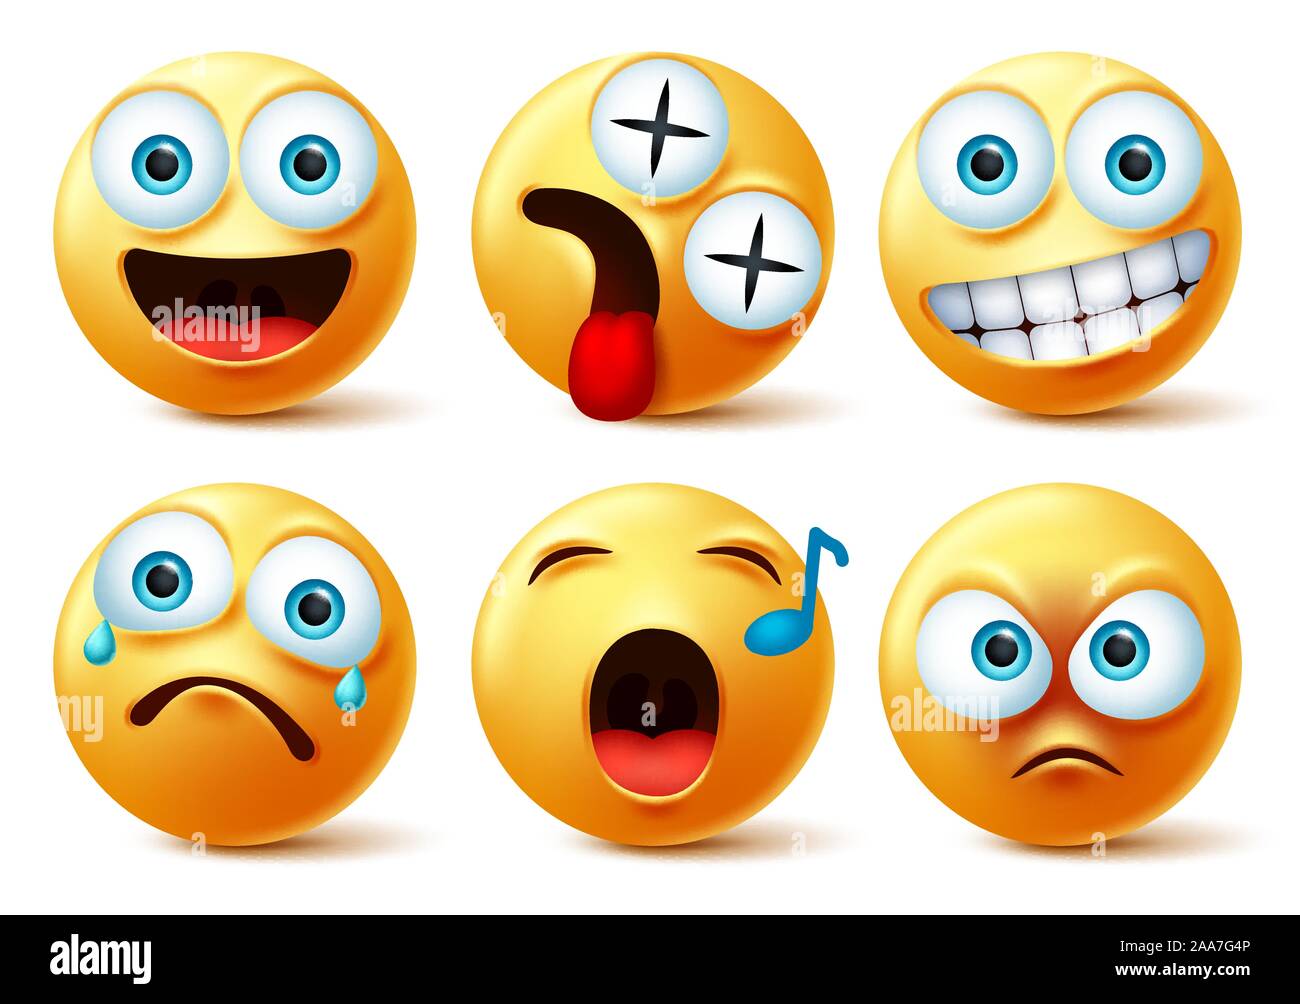 Smiley faccia emoji set di vettore. Smileys emojis o emoticon carino con volti felici, vertigini, cantando, arrabbiato, sorpresa, triste e piange l'espressione del viso. Illustrazione Vettoriale